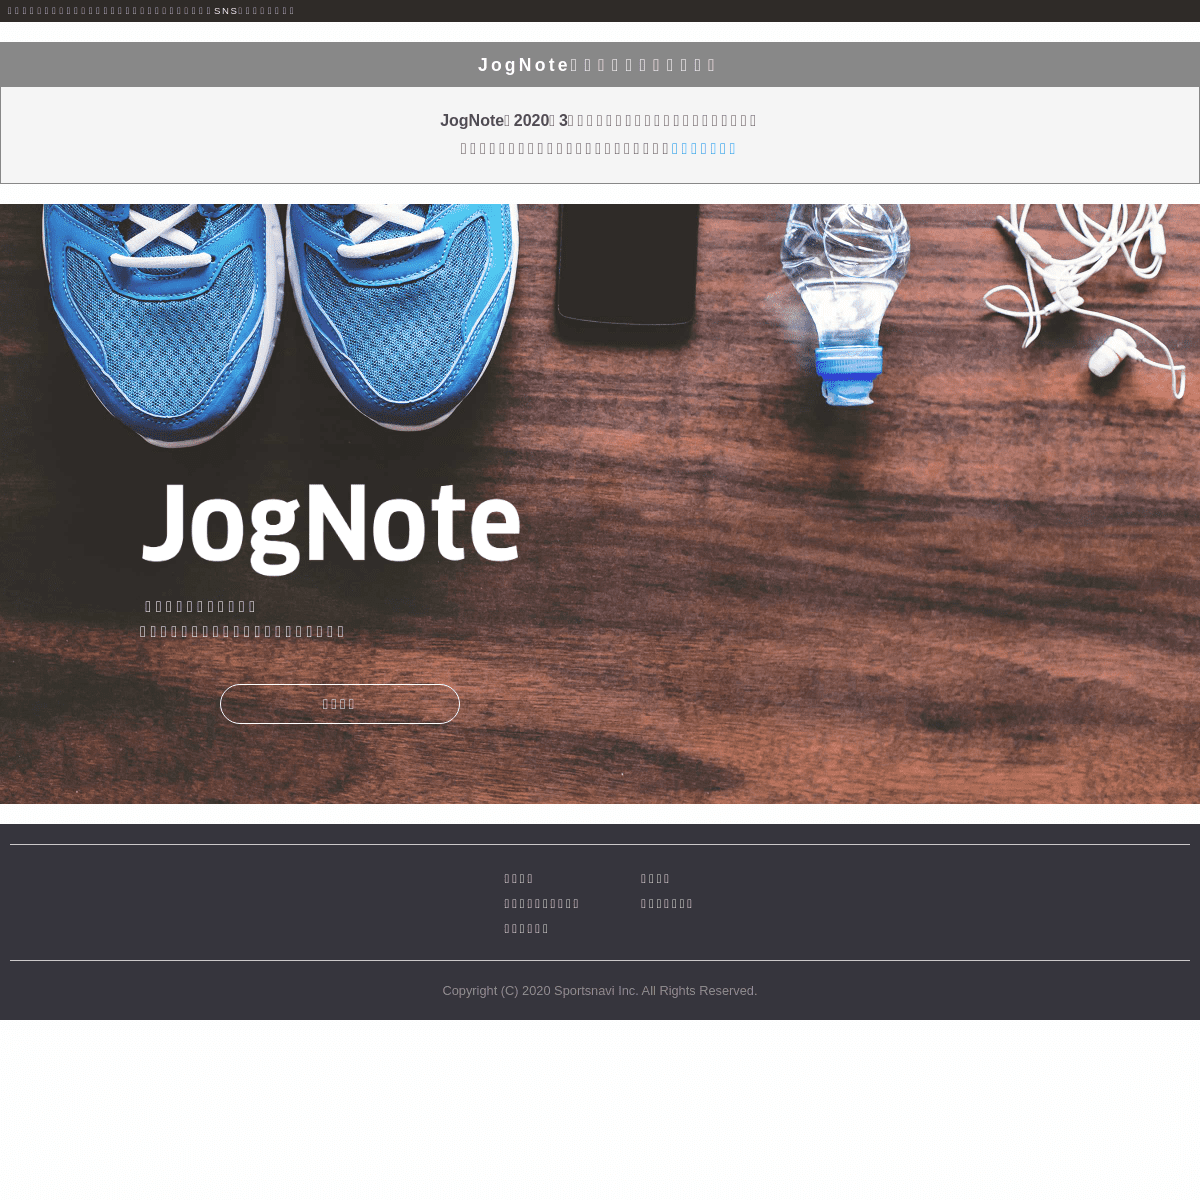 A complete backup of jognote.com